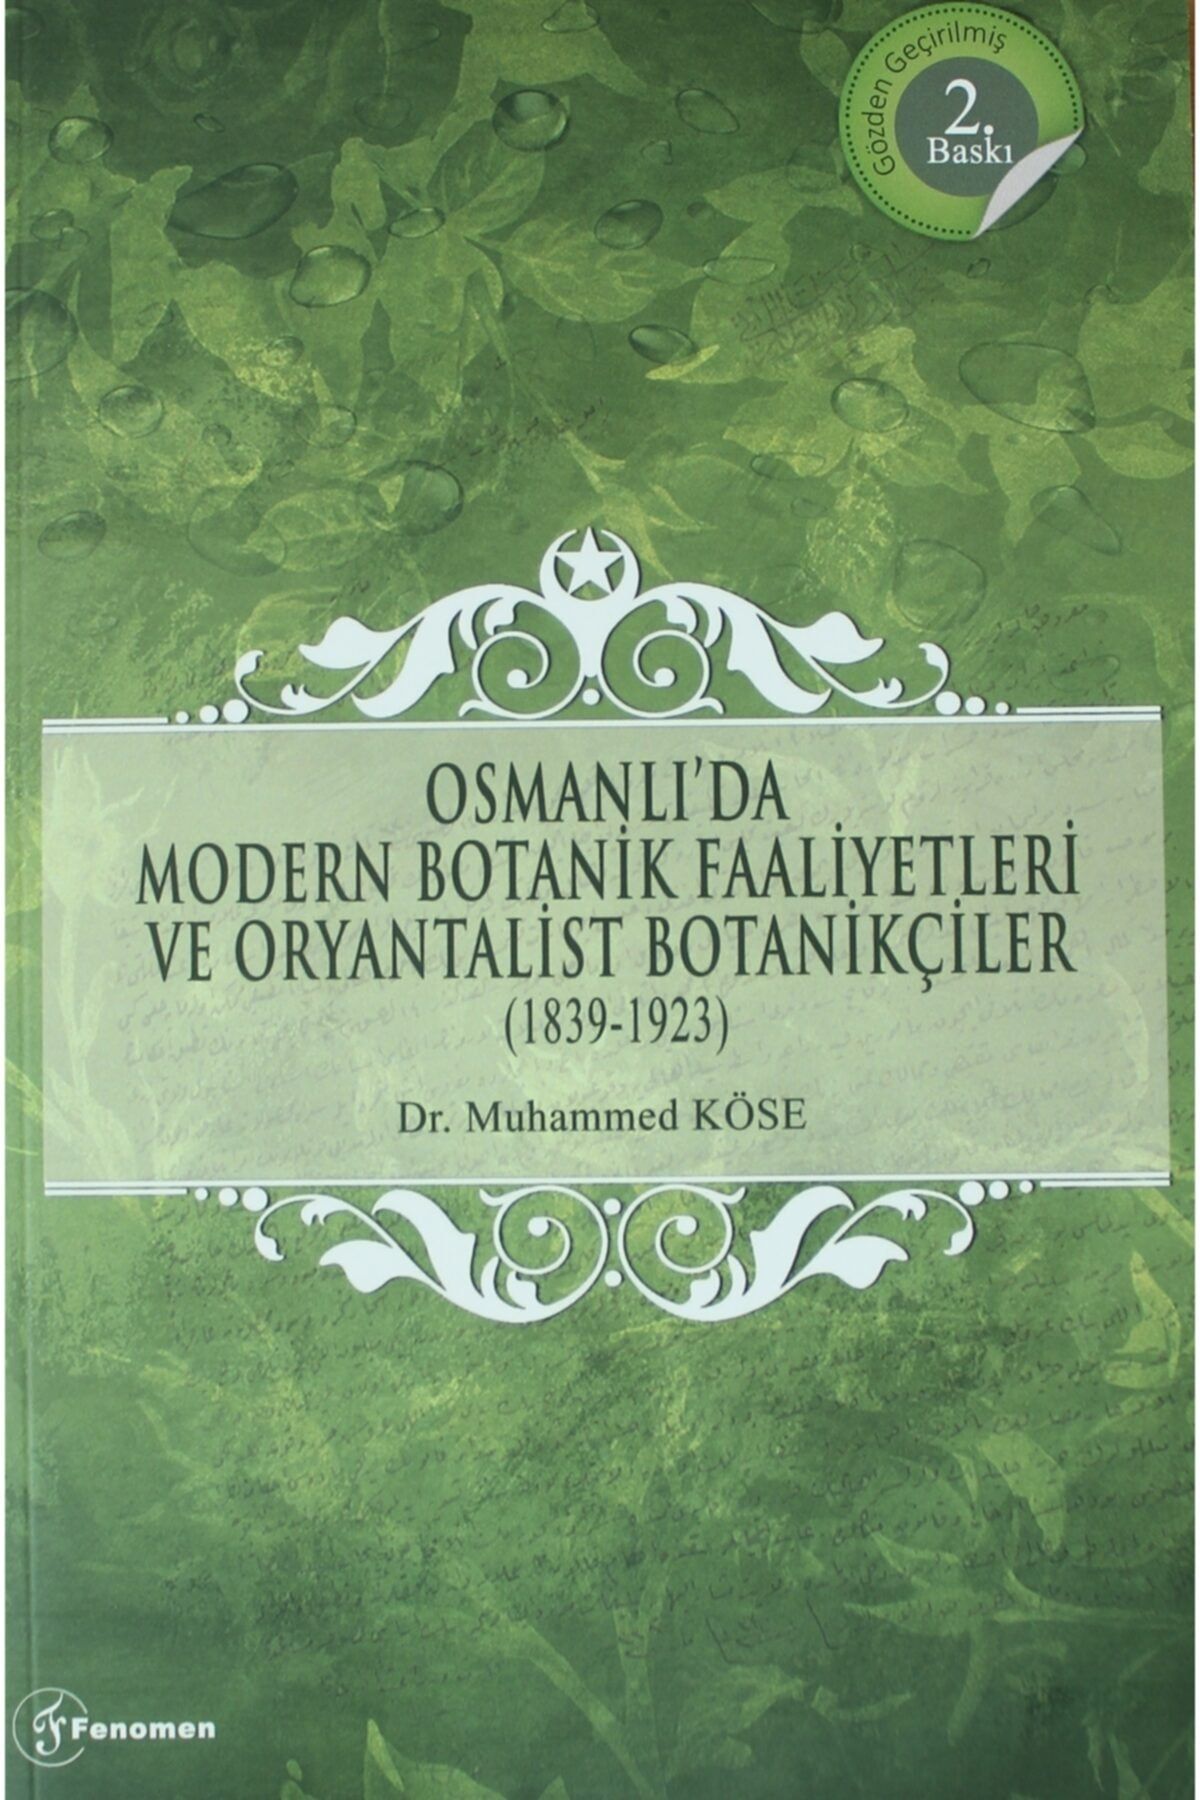 Fenomen Yayıncılık Osmanlı'da Modern Botanik Faaliyetleri Ve Oryantalist Botanikçiler (1839-1923)